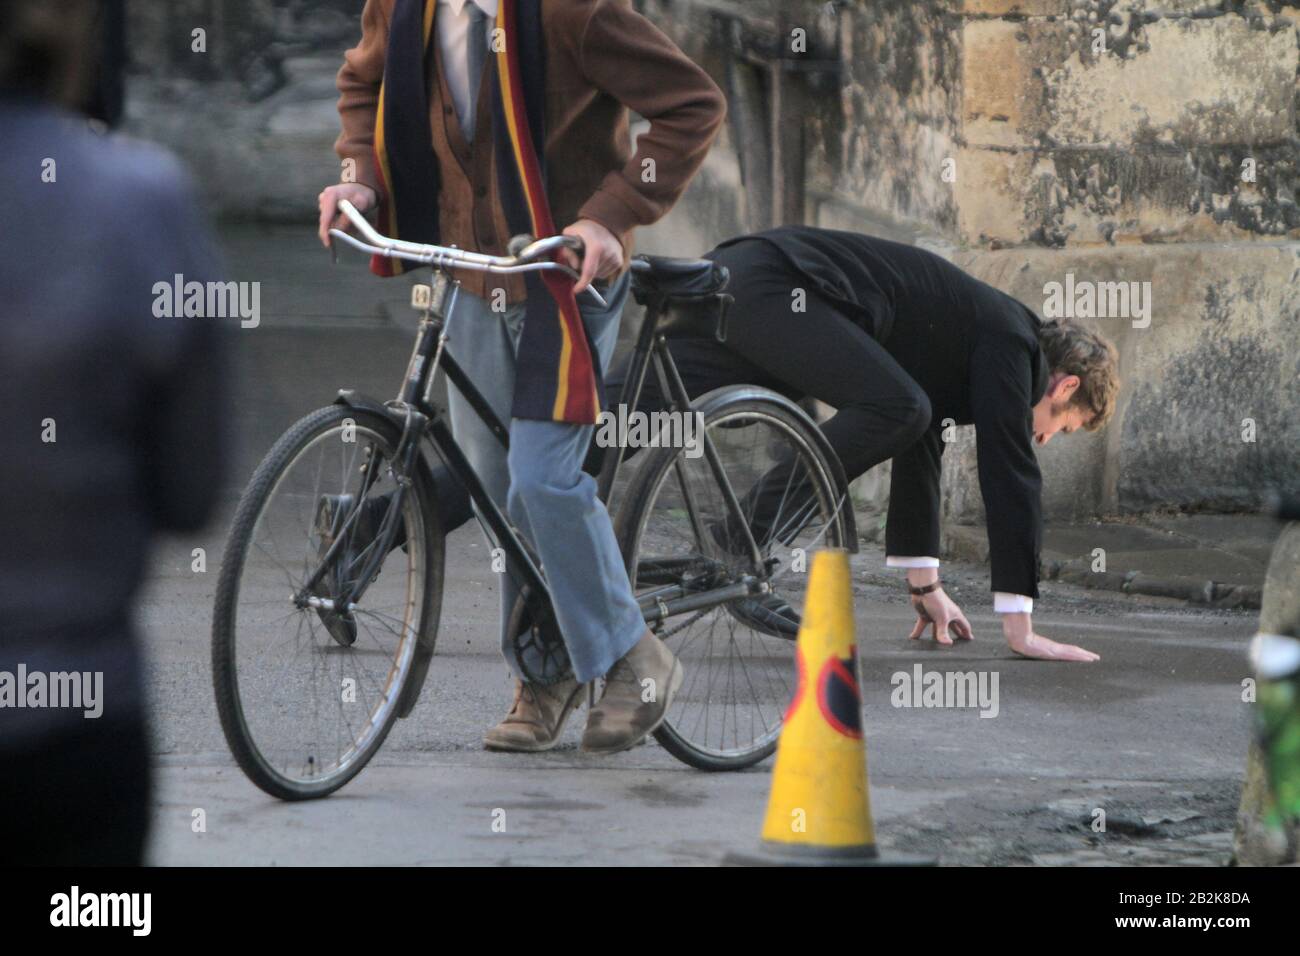 Shaun Evans spielt den jungen Inspektor Morse in der ITV-Dramaserie Endeavour (ein Morse Prequel), die am 18. August 2019 in Oxford die 7. Serie gedreht hat (Bild©Jack Ludlam) Stockfoto